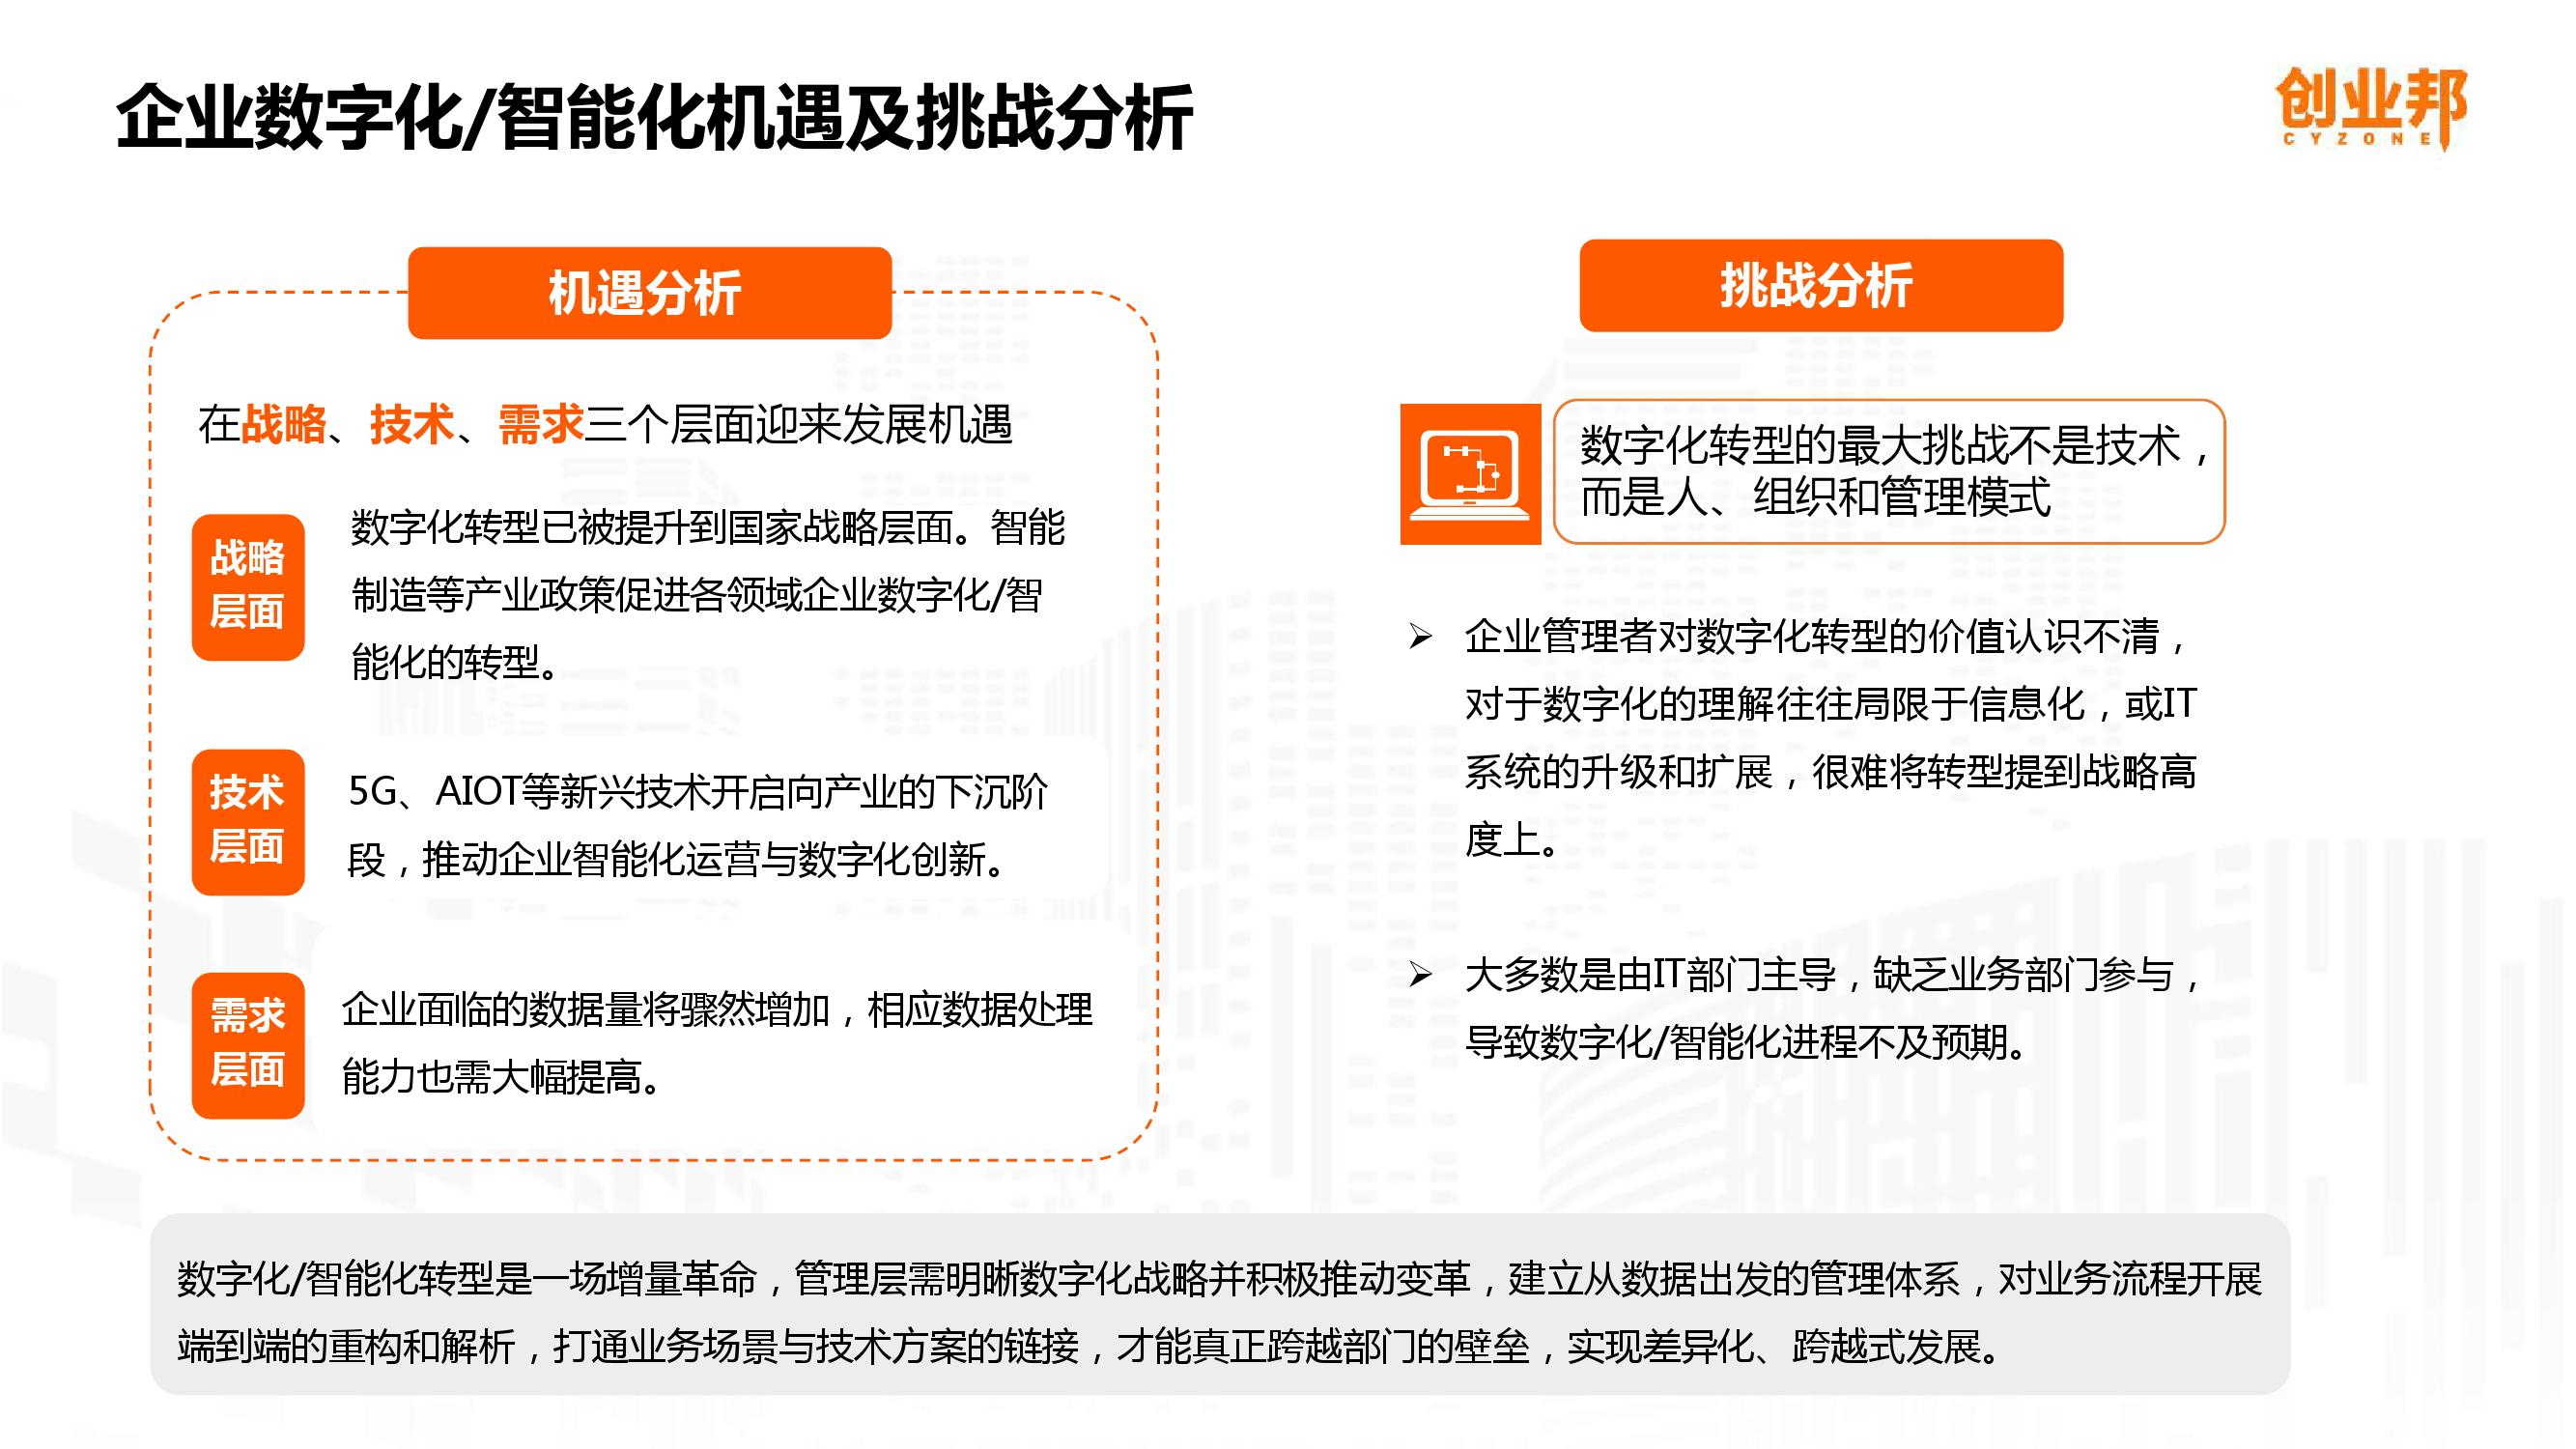 2019中国企业数字化智能化研究报告_000042-3